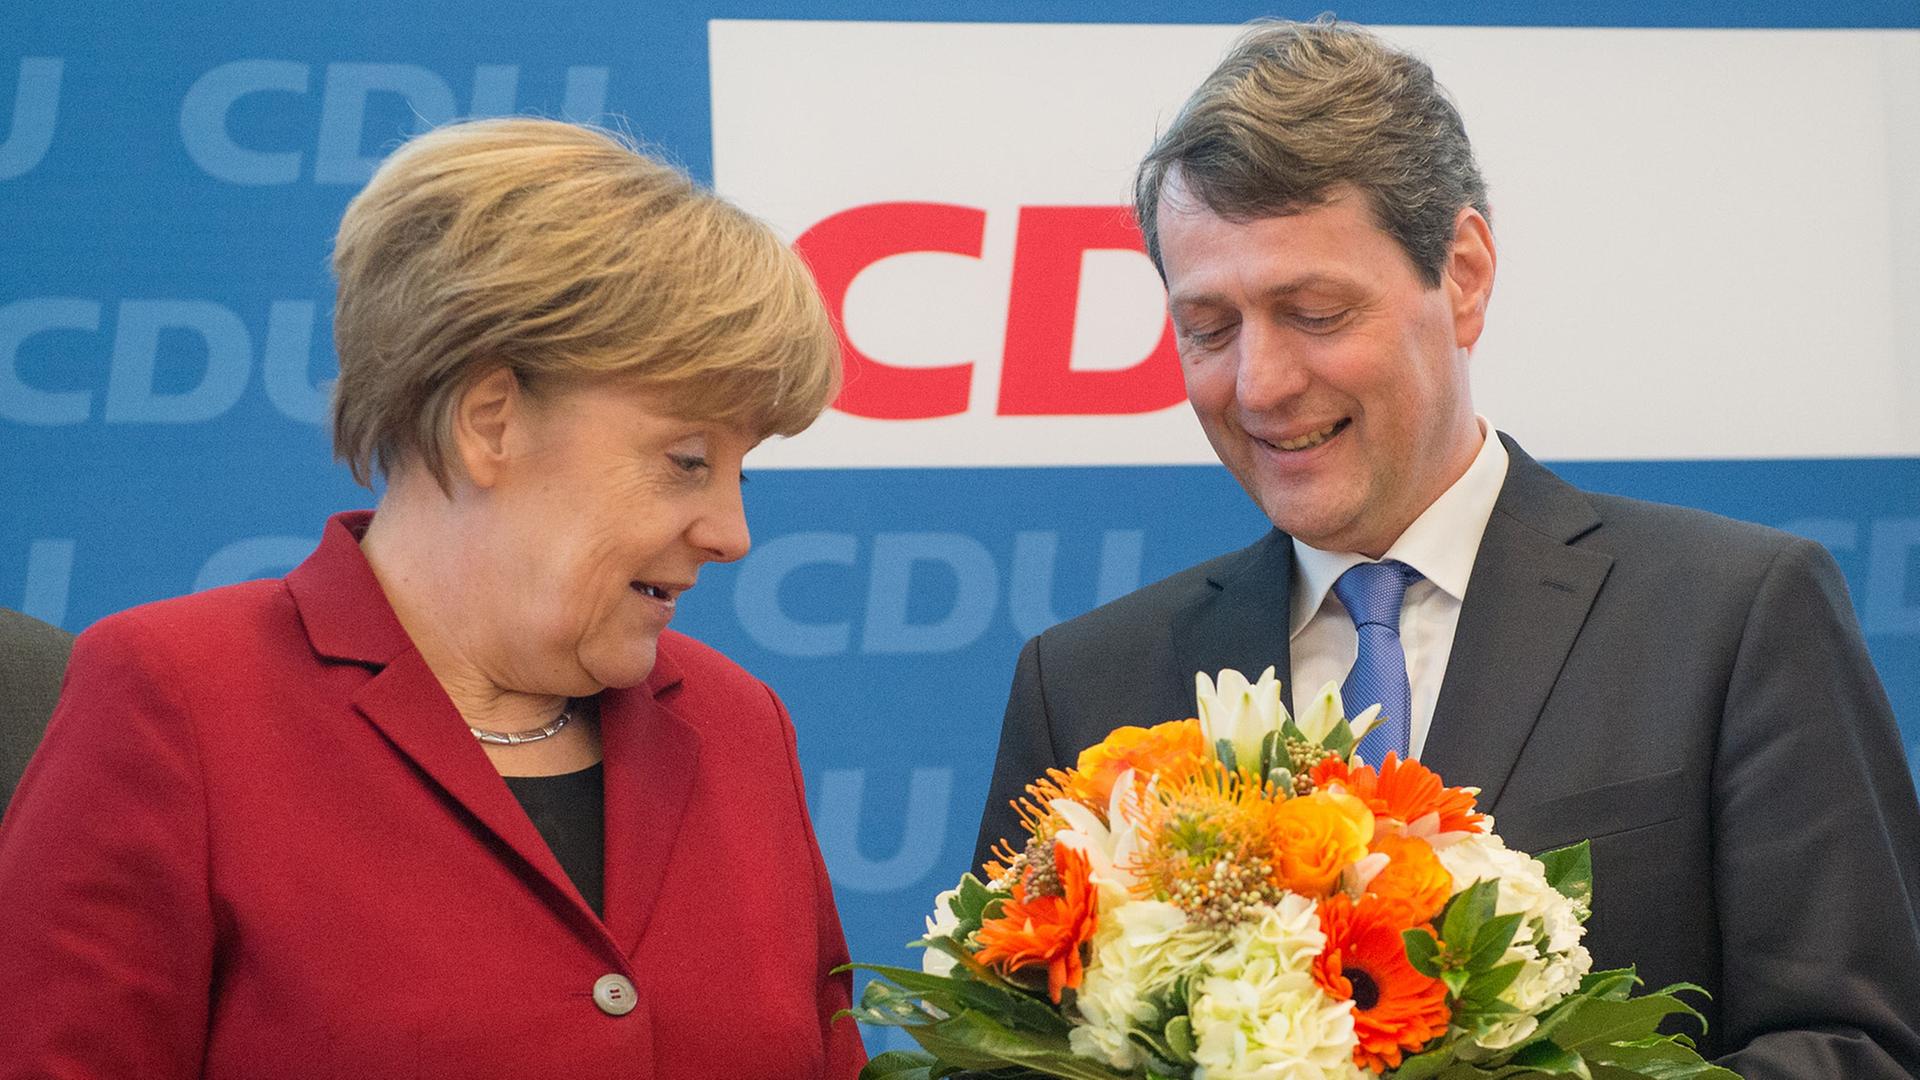 Blumen trotz "bitterem Ergebnis" bei der Hamburger Bürgerschaftswahl bekommt Dietrich Wersich von Bundeskanzlerin und CDU-Chefin Angela Merkel.